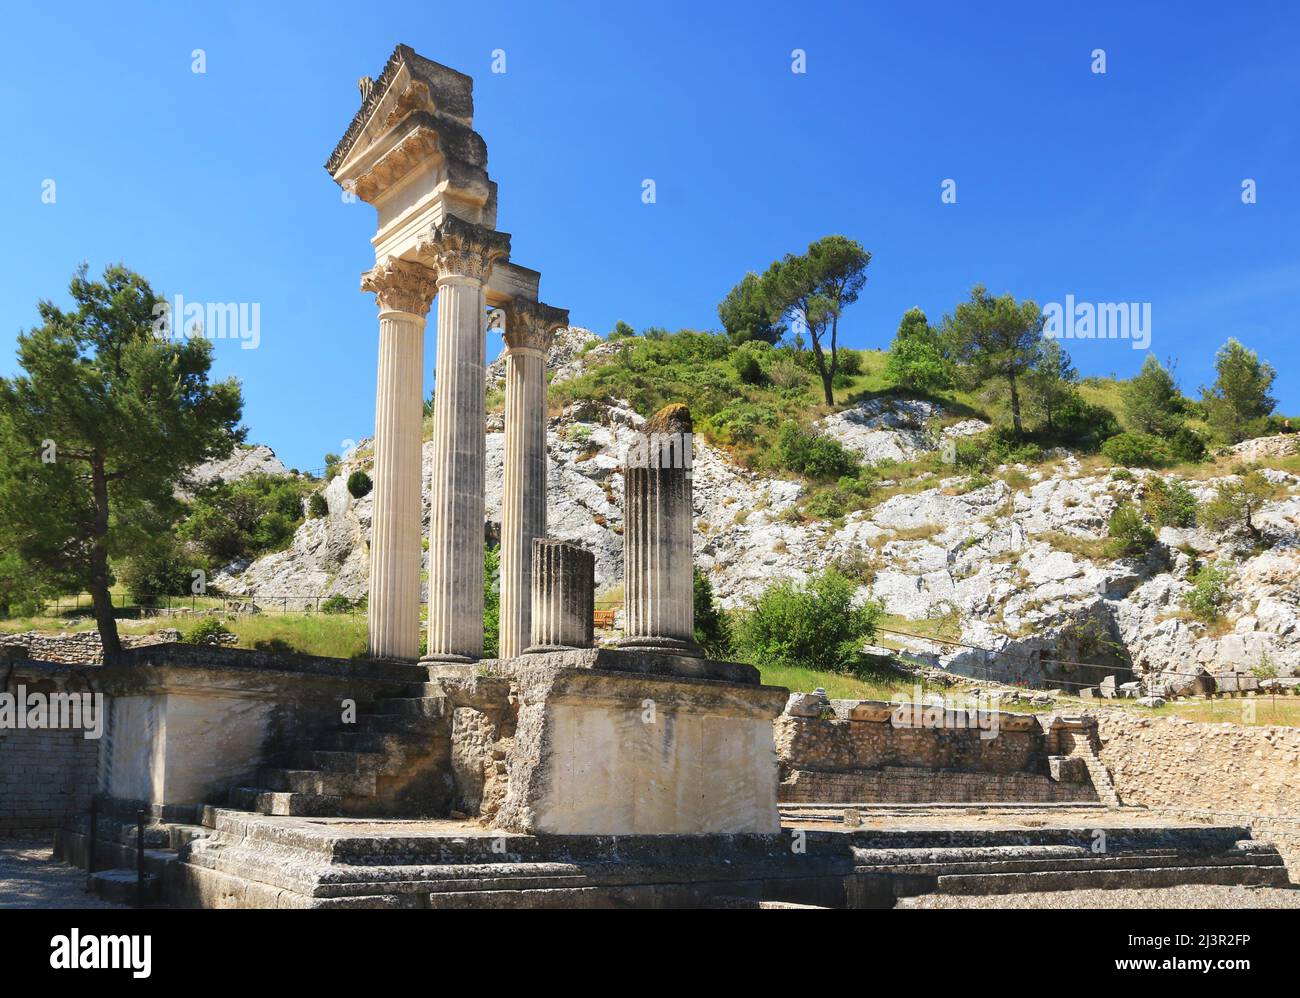 Ancient Roman remains in Saint-Rémy de Provence. Stock Photo